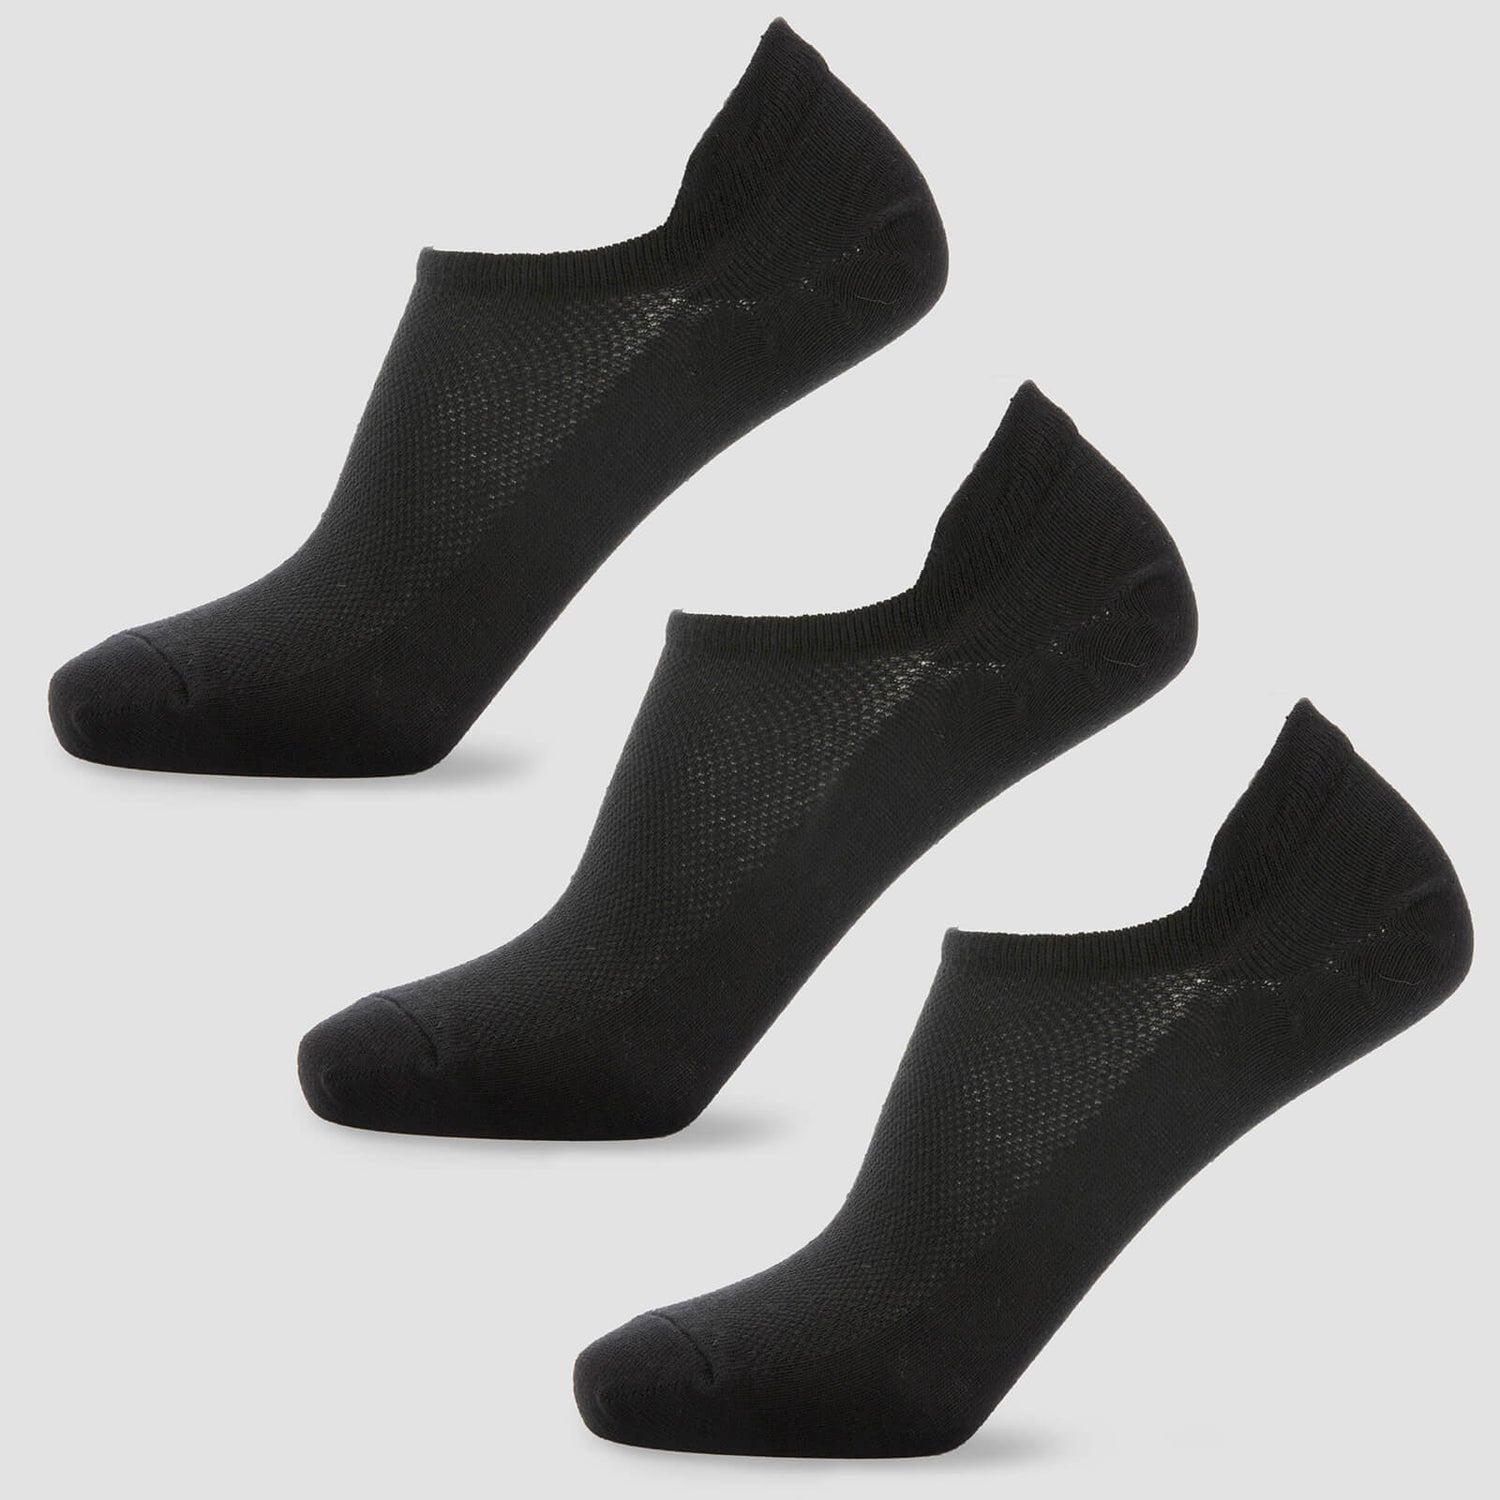 Dámské kotníkové ponožky - Černé - UK 3-6